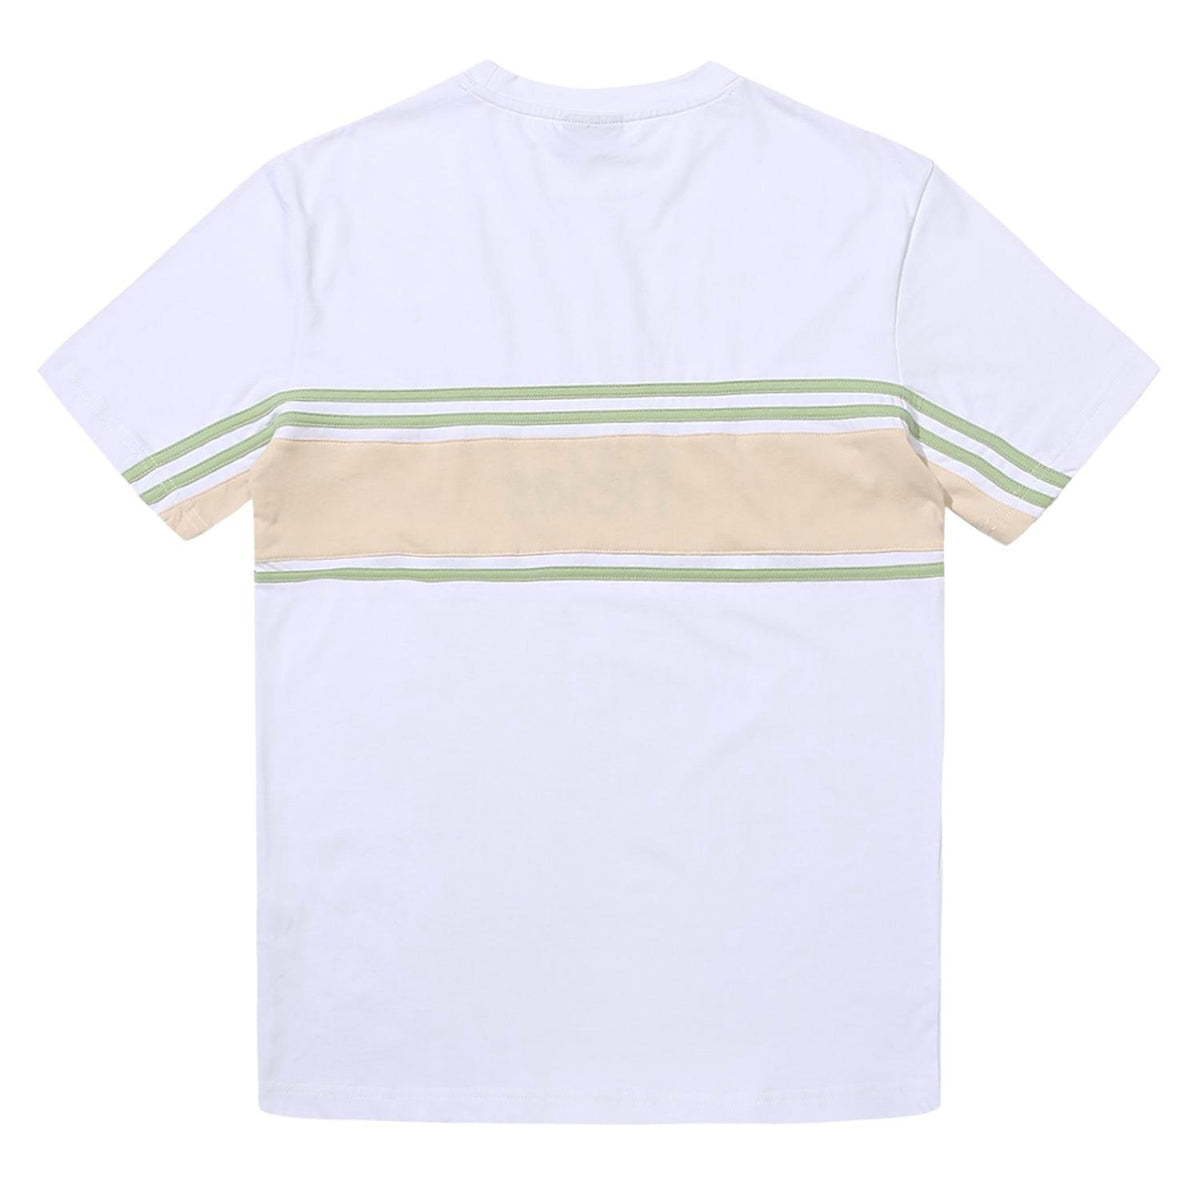 Helas Clint T-Shirt - White - Mens Skate Brand T-Shirt by Helas